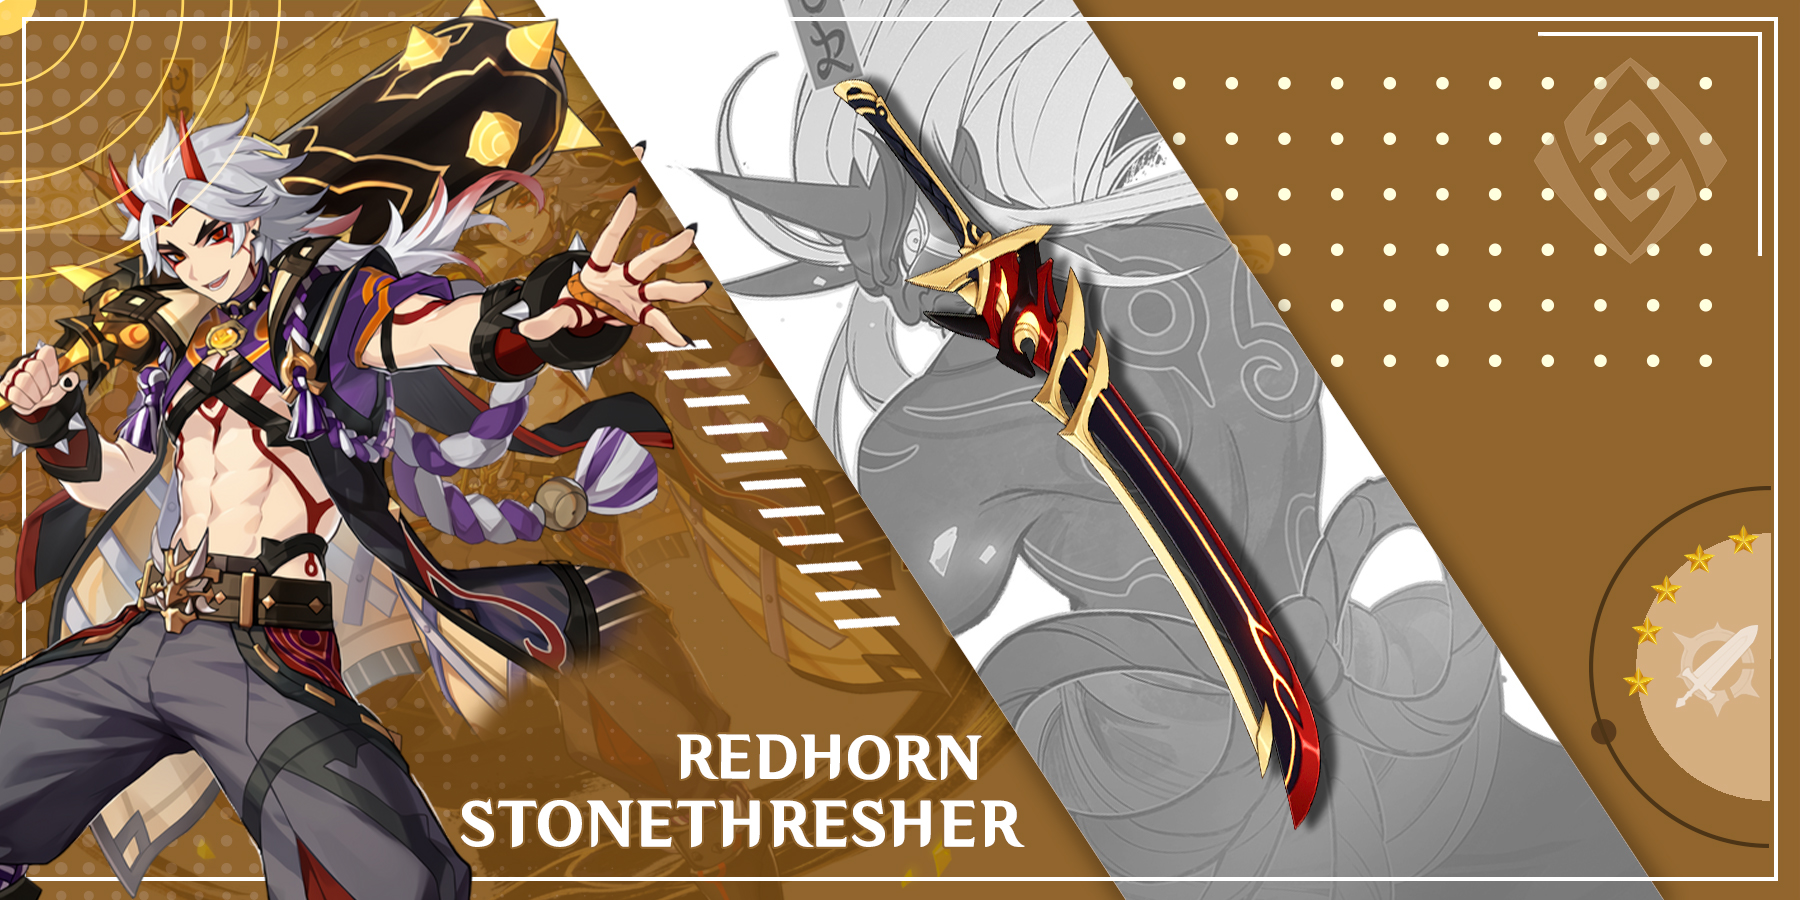 arataki-itto-using-redhorn-stonethresher-in-genshin-impact